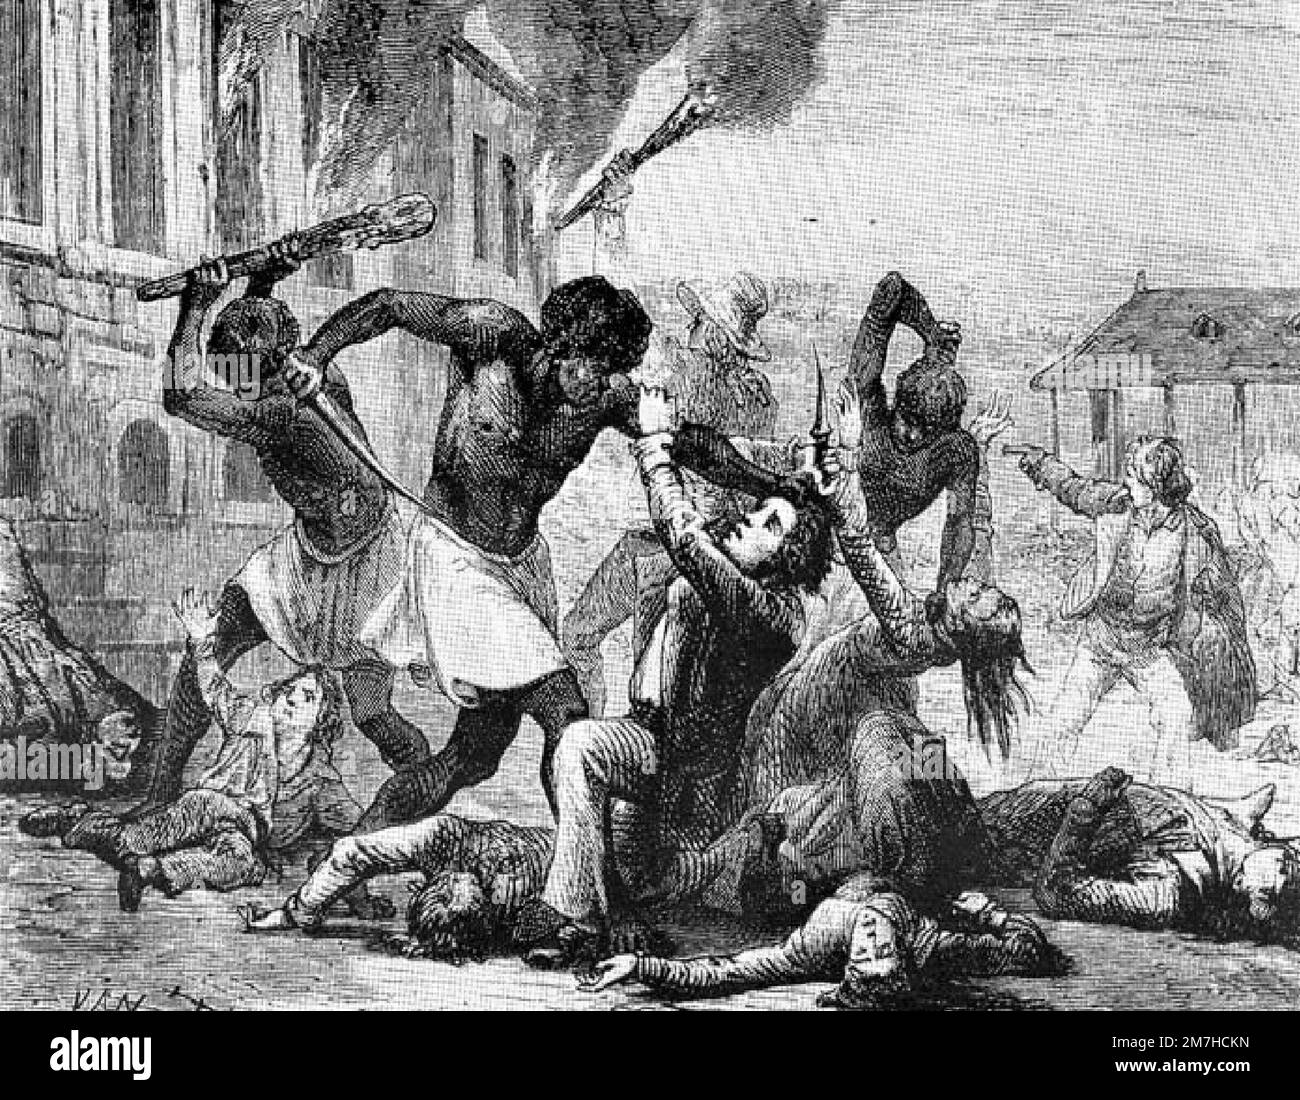 Une illustration du massacre de la population blanche d'Haïti par les esclaves rebelles pendant la Révolution haïtienne. Cette révolution a été le renversement violent et sanglant de la classe dirigeante blanche d'Haïti lors d'un soulèvement des esclaves. Banque D'Images